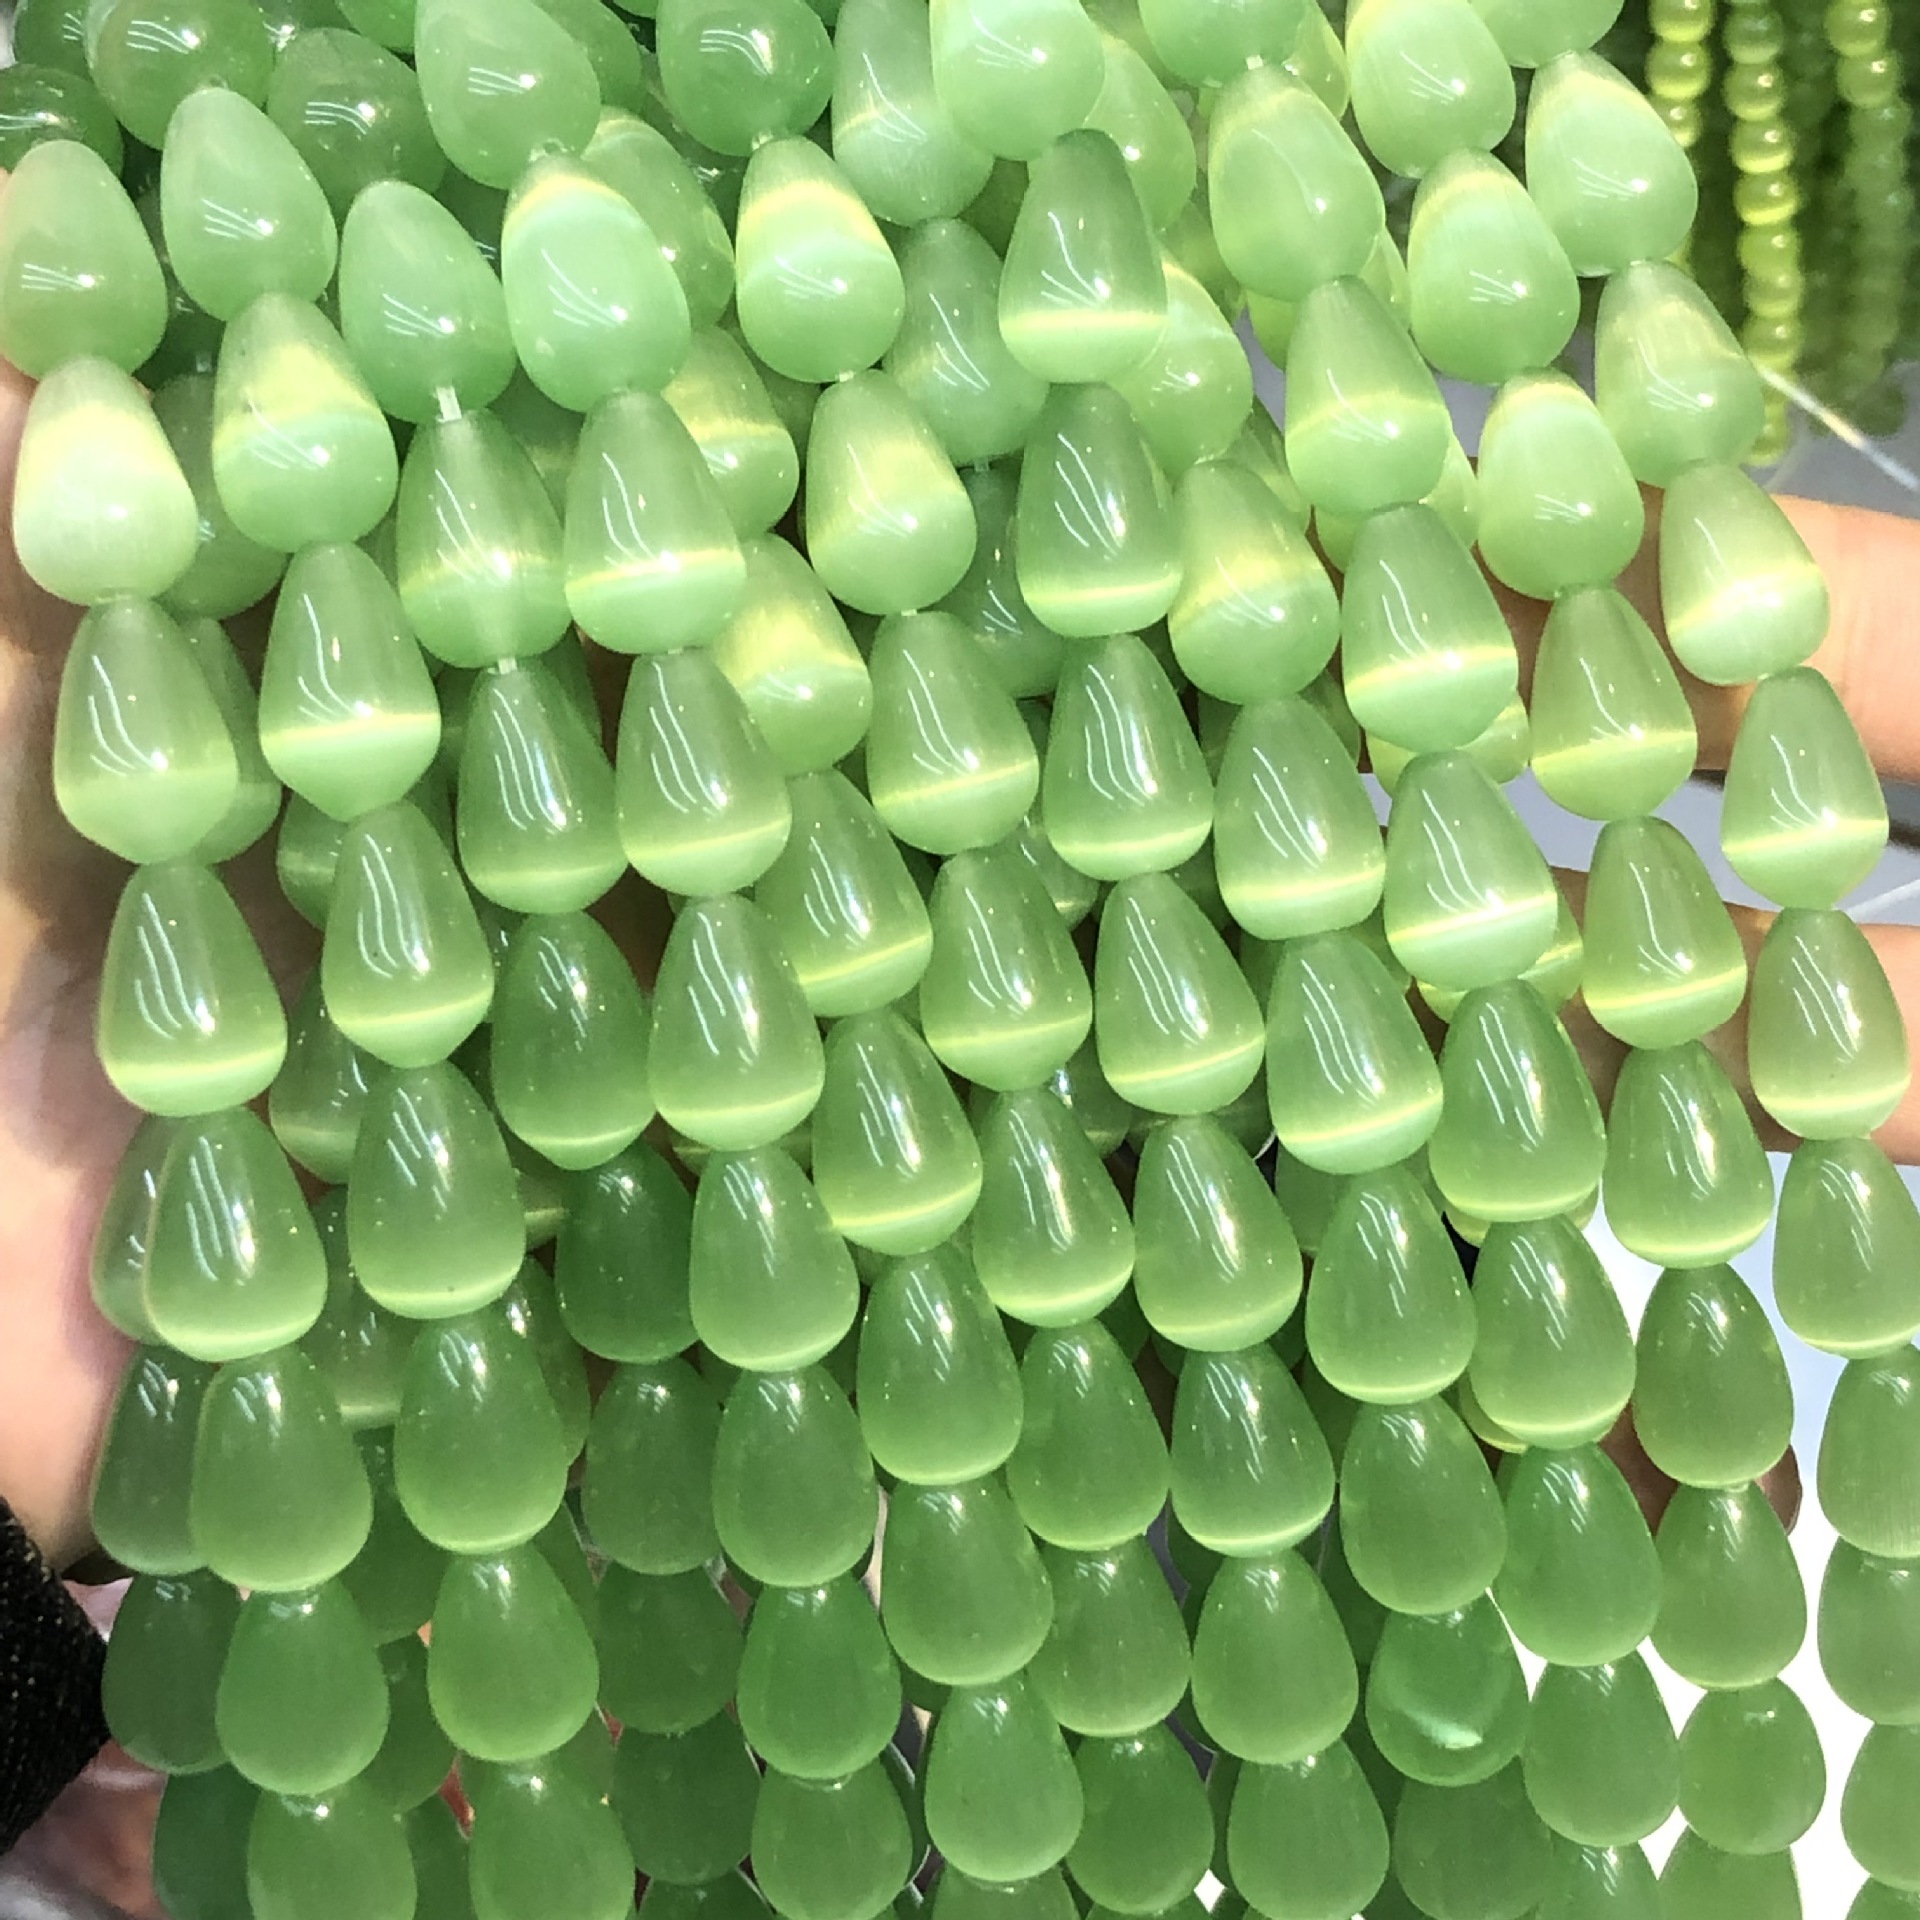 Fruta verde